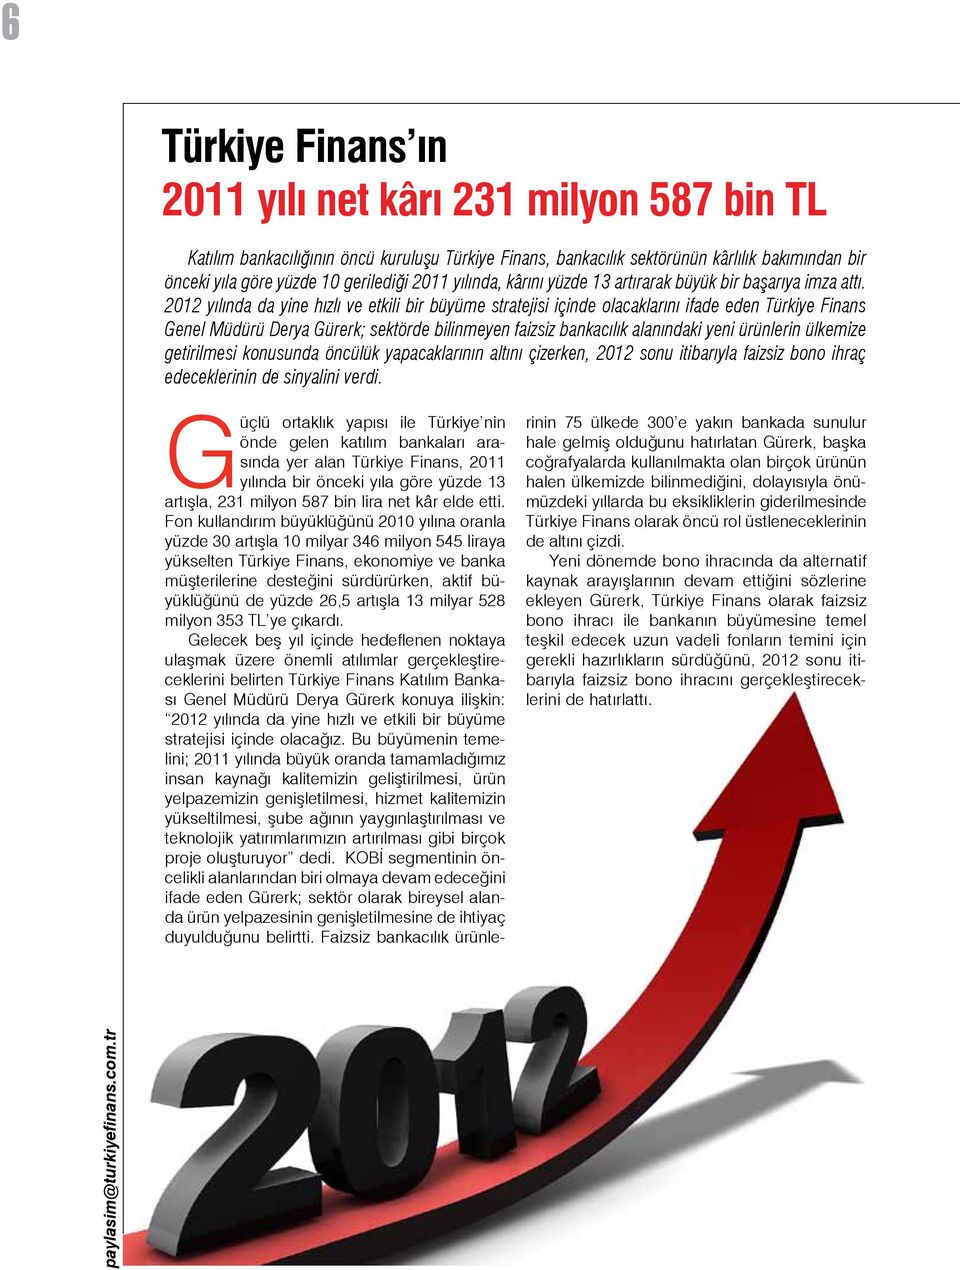 2012 yılında da yine hızlı ve etkili bir büyüme stratejisi içinde olacaklarını ifade eden Türkiye Finans Genel Müdürü Derya Gürerk; sektörde bilinmeyen faizsiz bankacılık alanındaki yeni ürünlerin